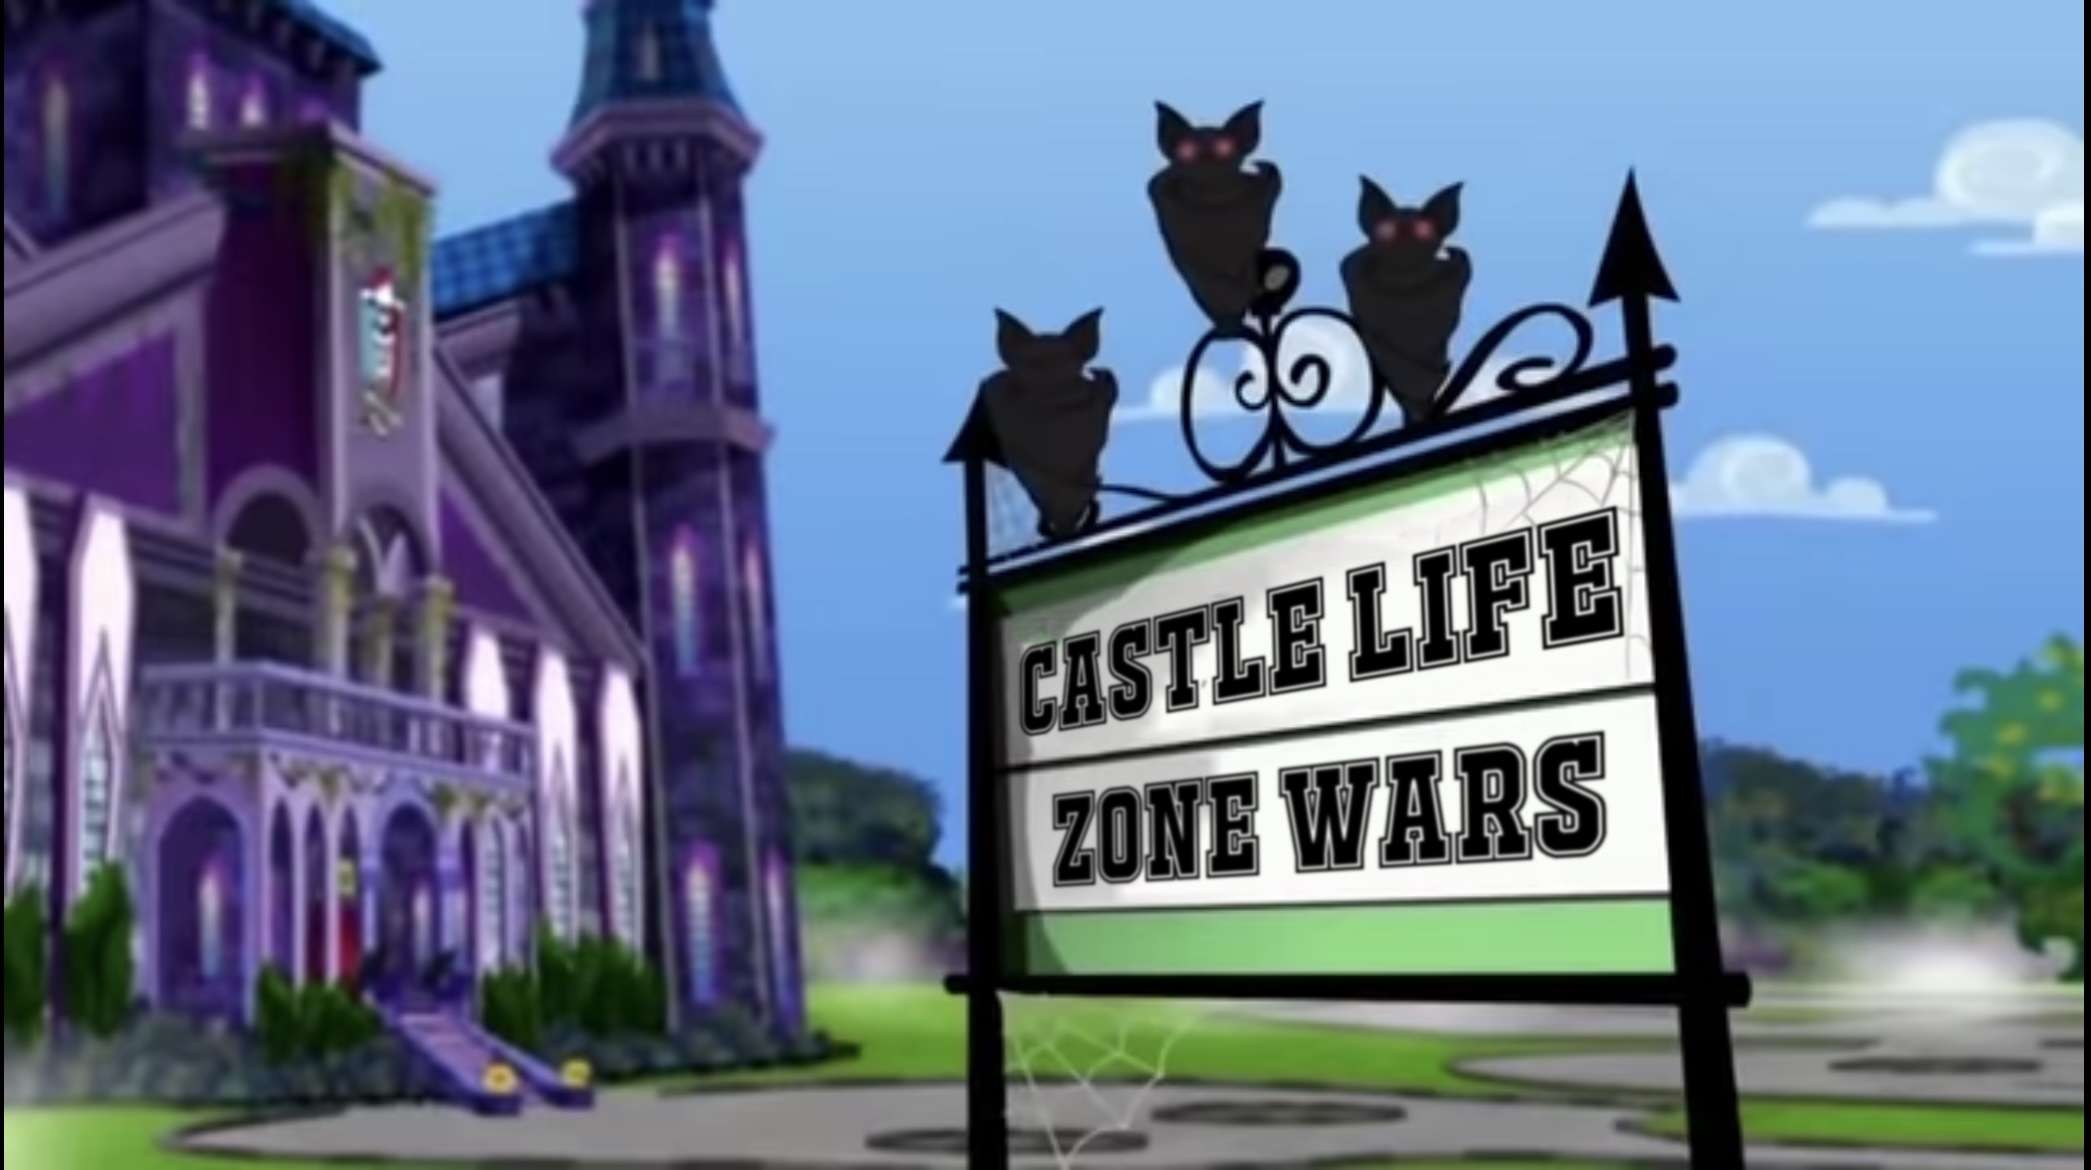 CASTLE LIFE ZONE WARS :(